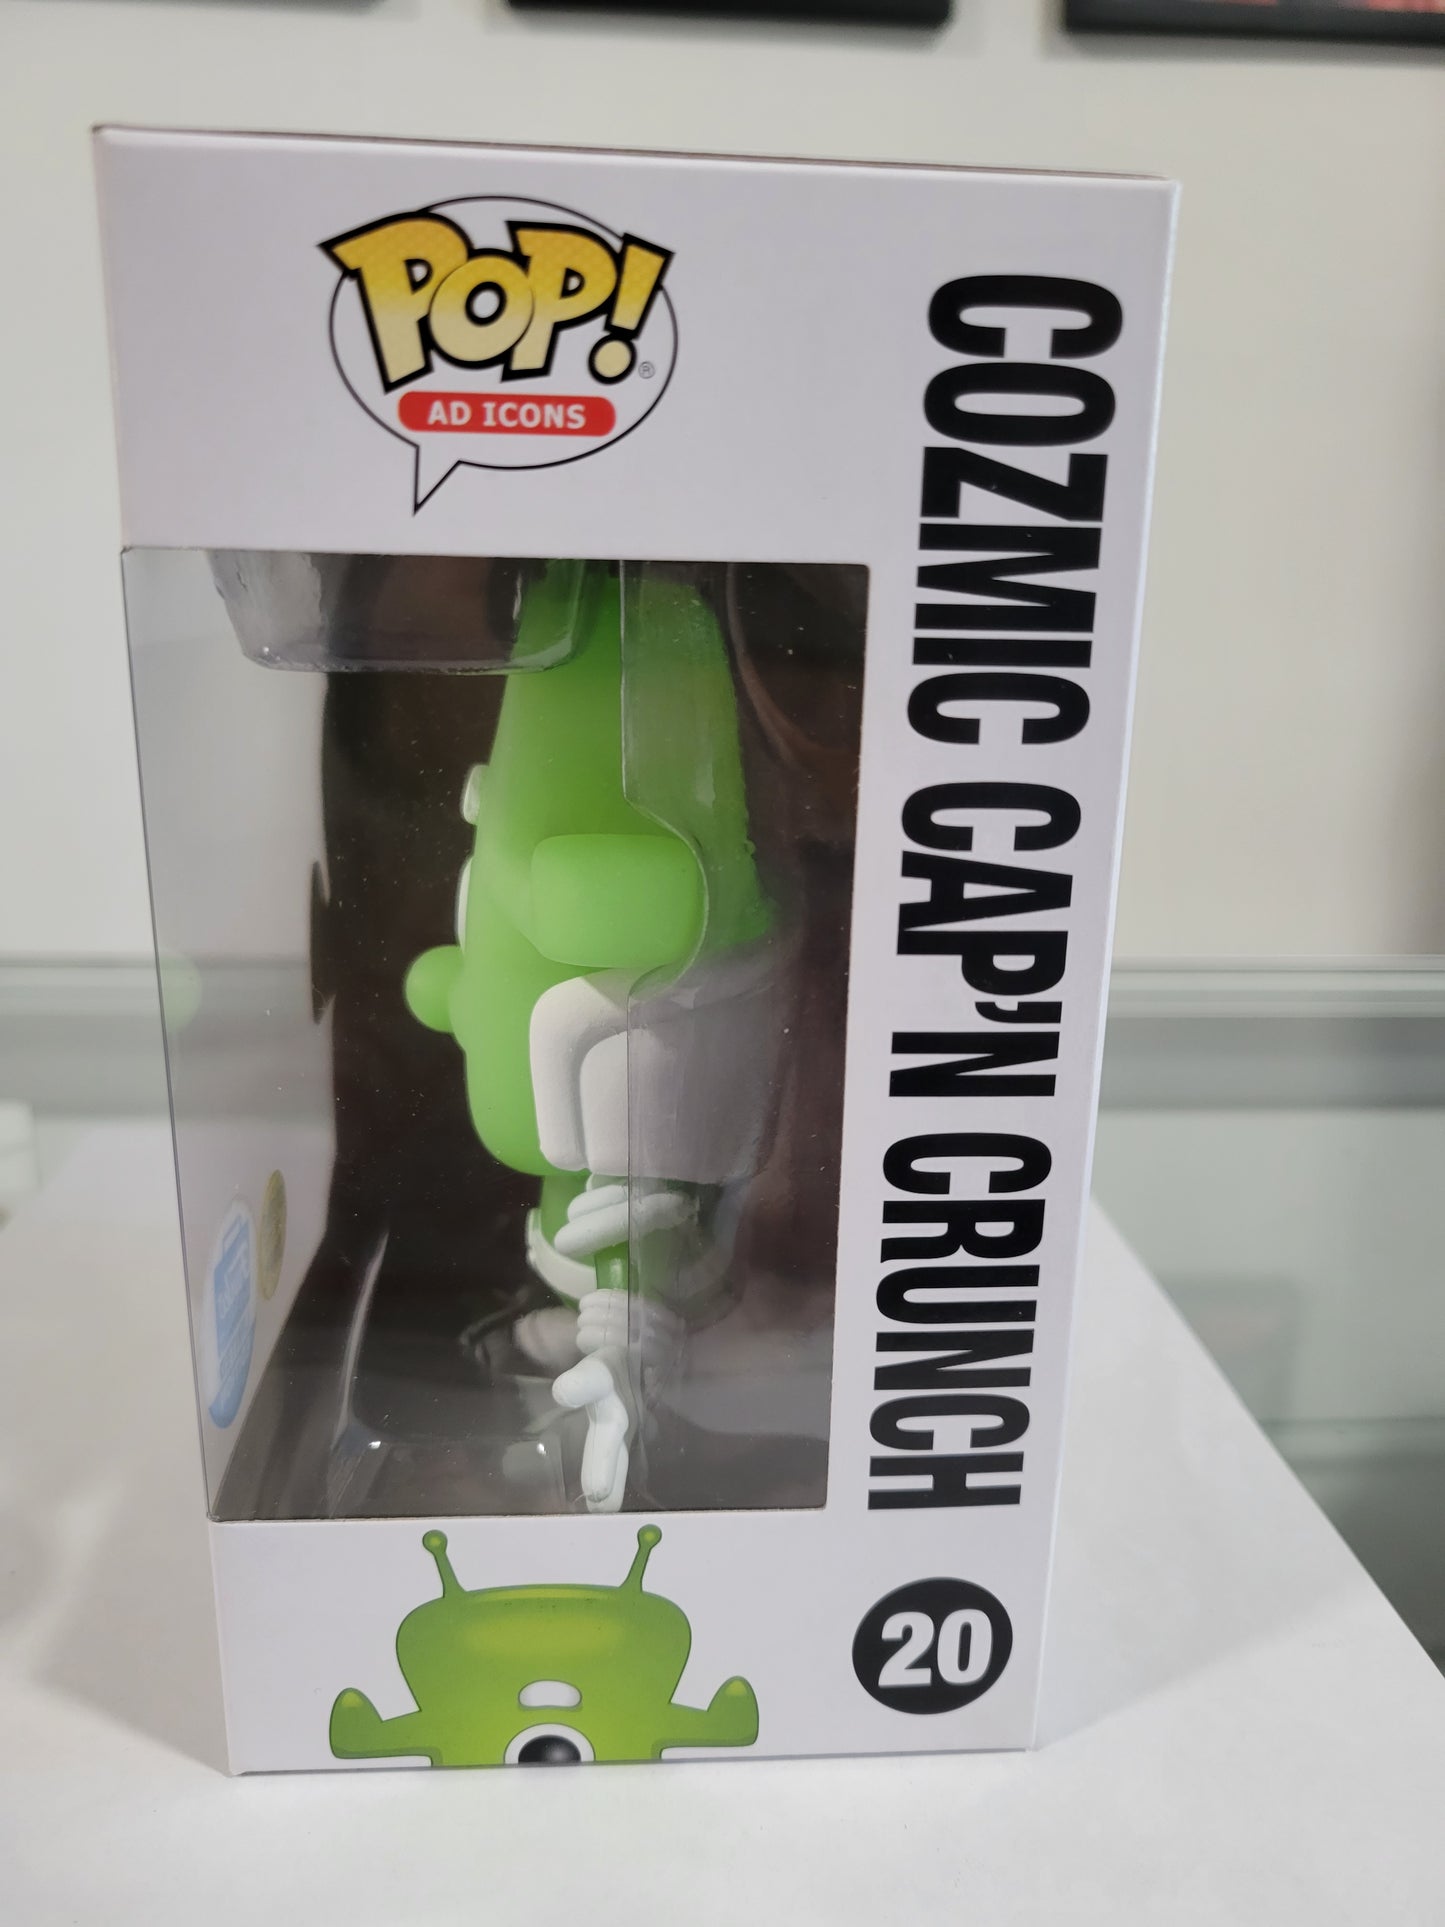 Pop! Cozmic Cap'n Crunch #20